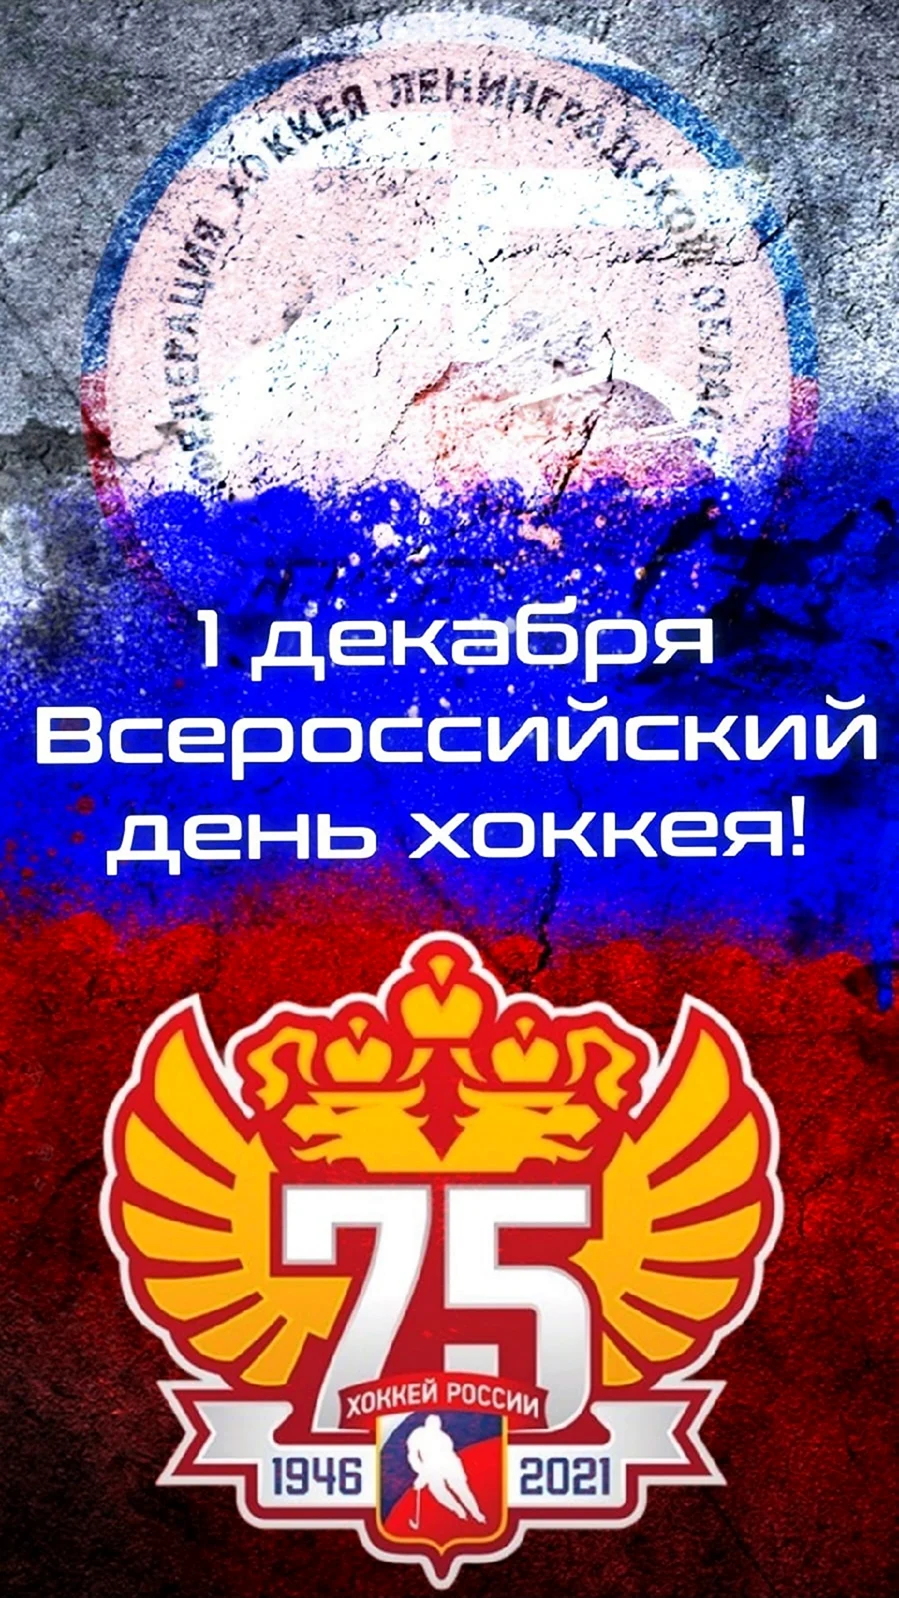 Всероссийский день хоккея 1 декабря. Открытка, картинка с поздравлением, с праздником